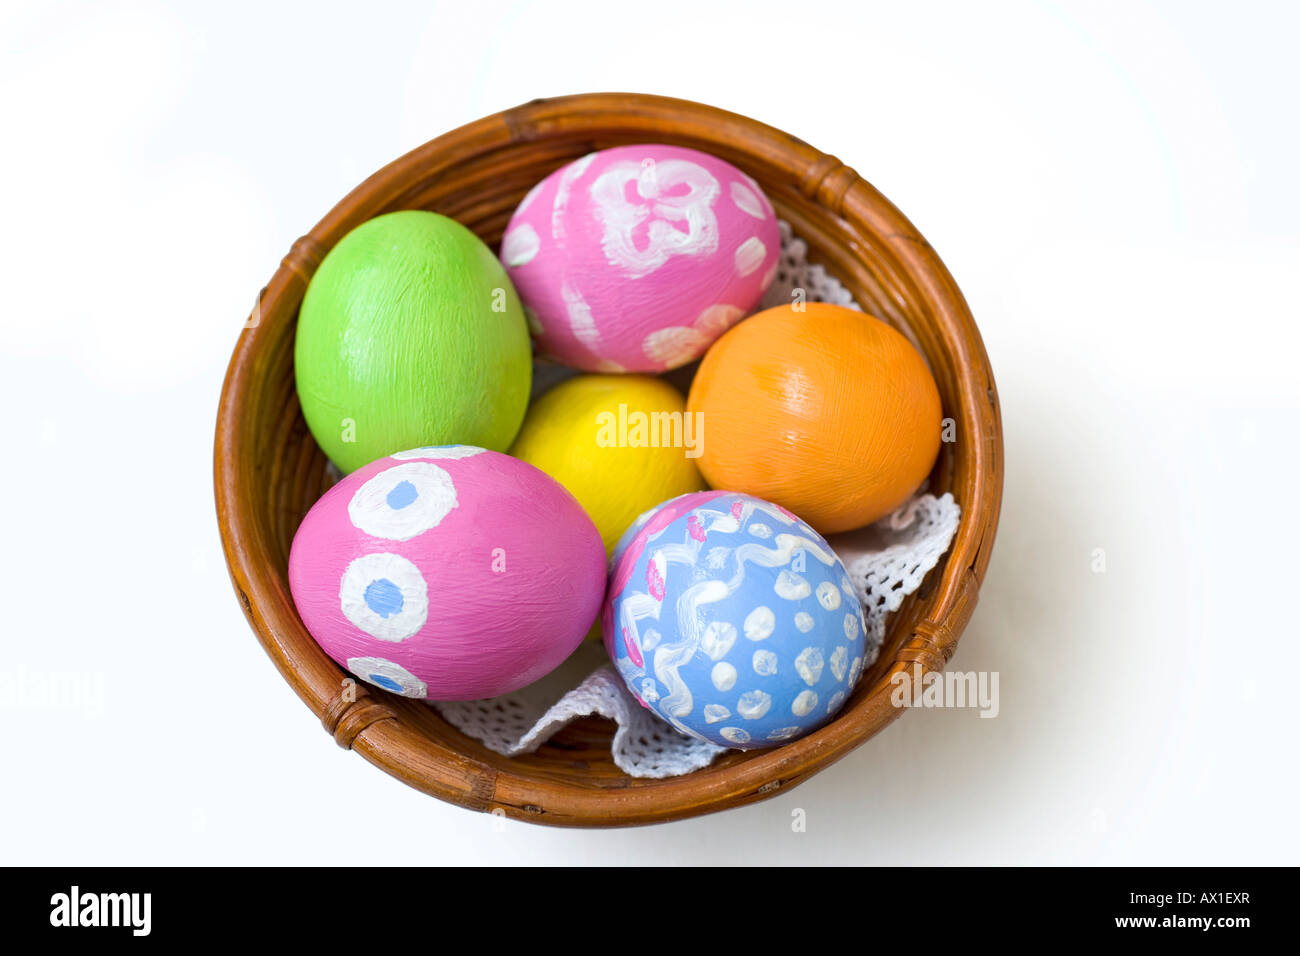 Los huevos de Pascua pintados a mano en un recipiente de bambú marrón Foto de stock